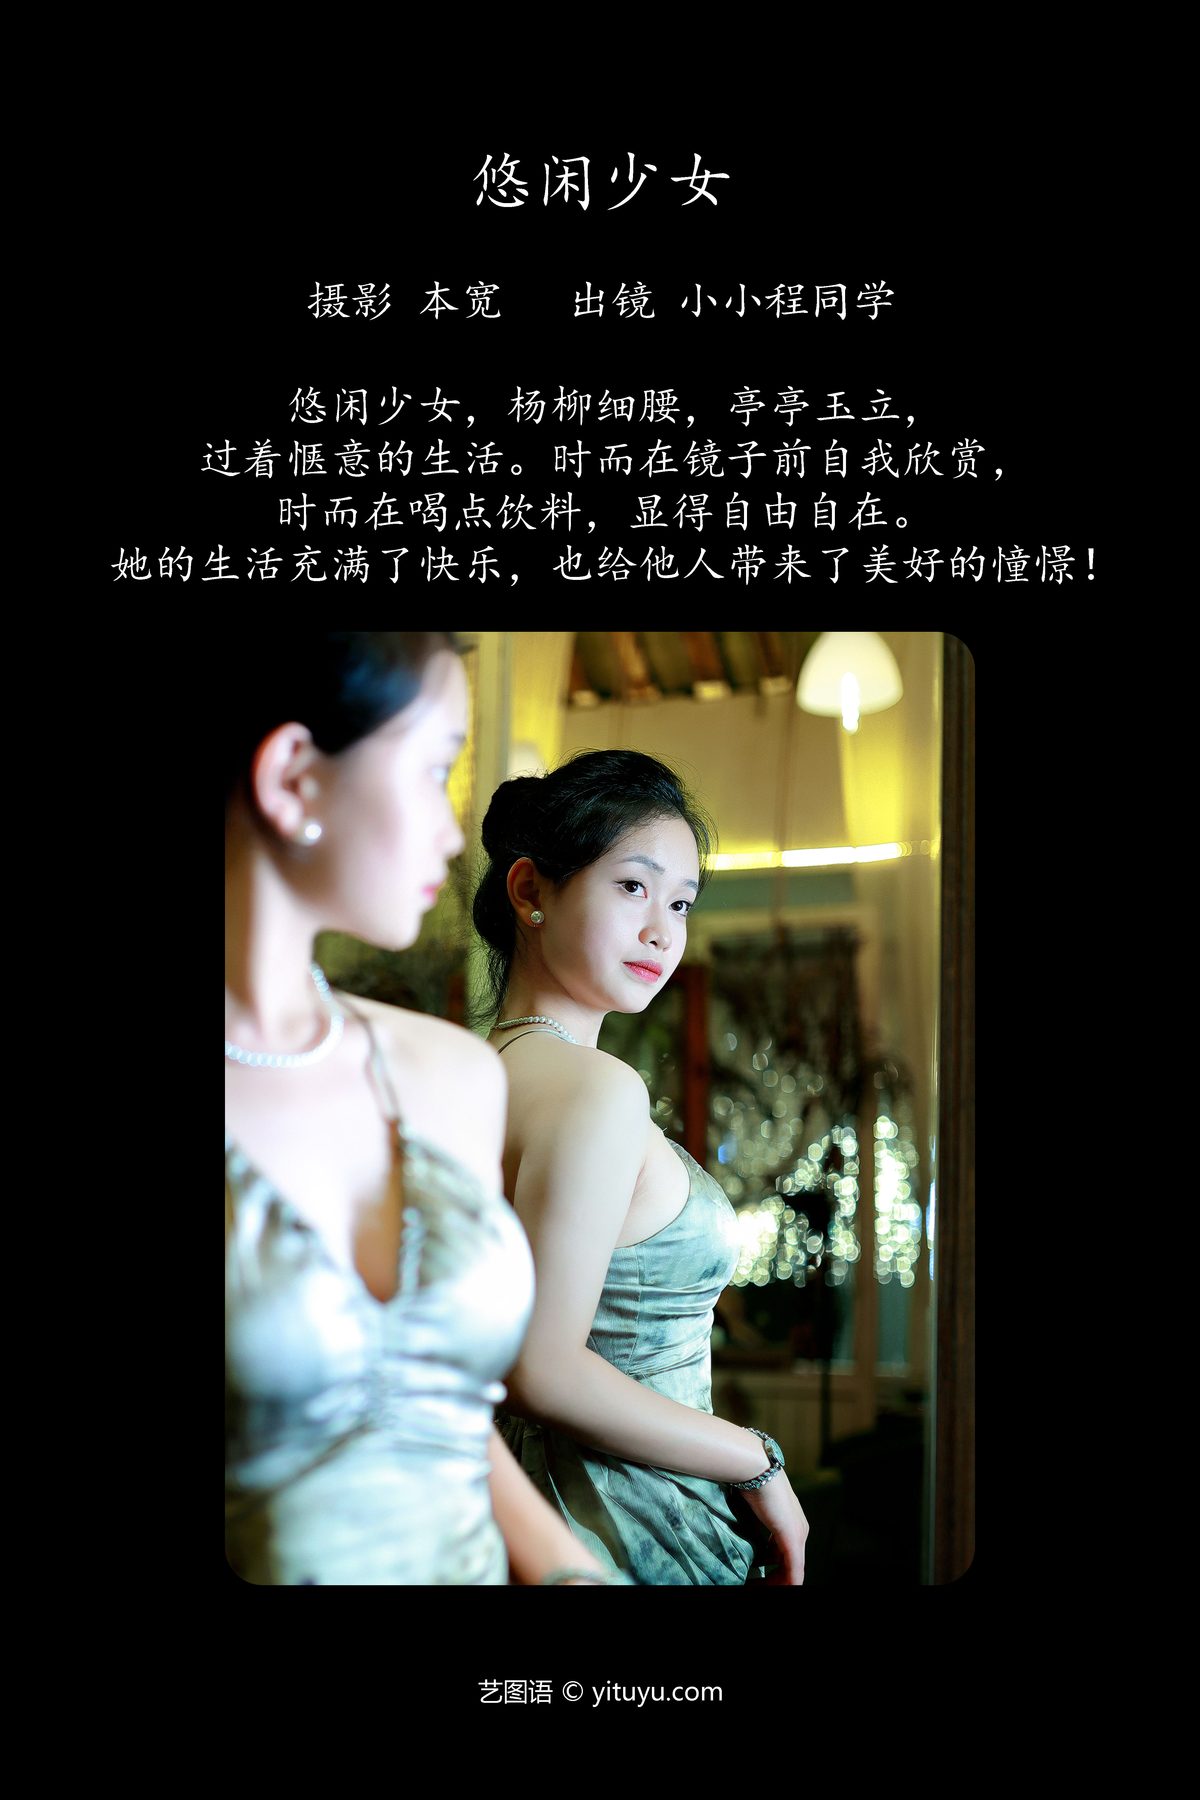 YiTuYu艺图语 Vol 5546 Xiao Xiao Cheng Tong Xue 0002 4909634773.jpg